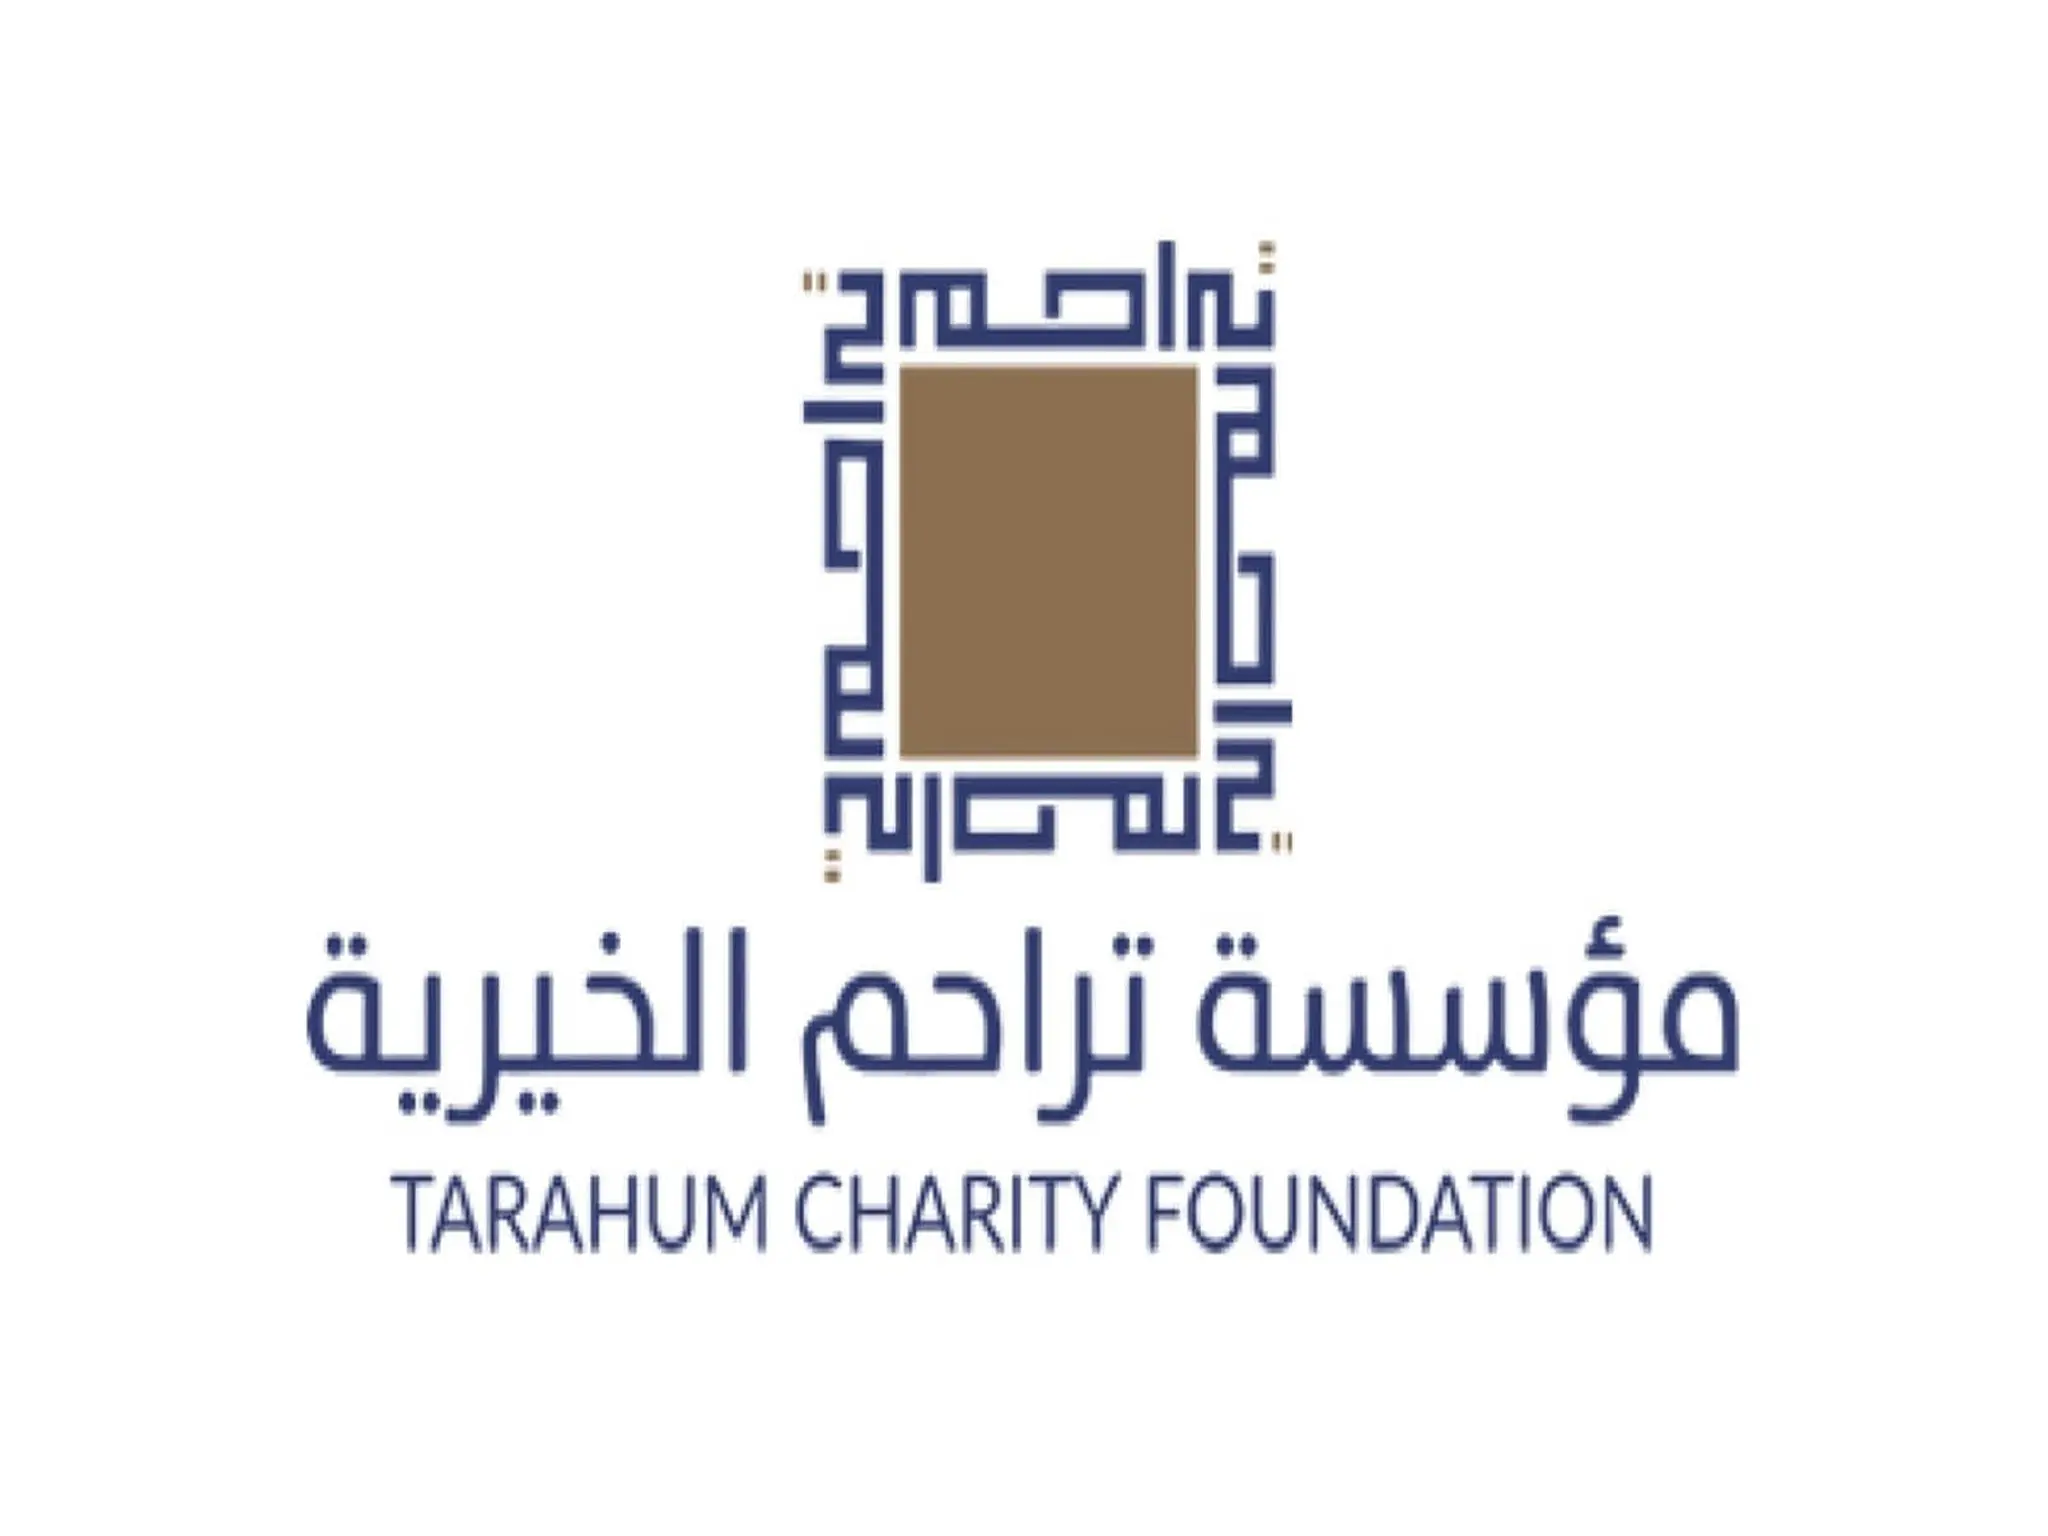 التسجيل فى جمعية تراحم الخيرية دبي وطلب مساعدة مالية 2023